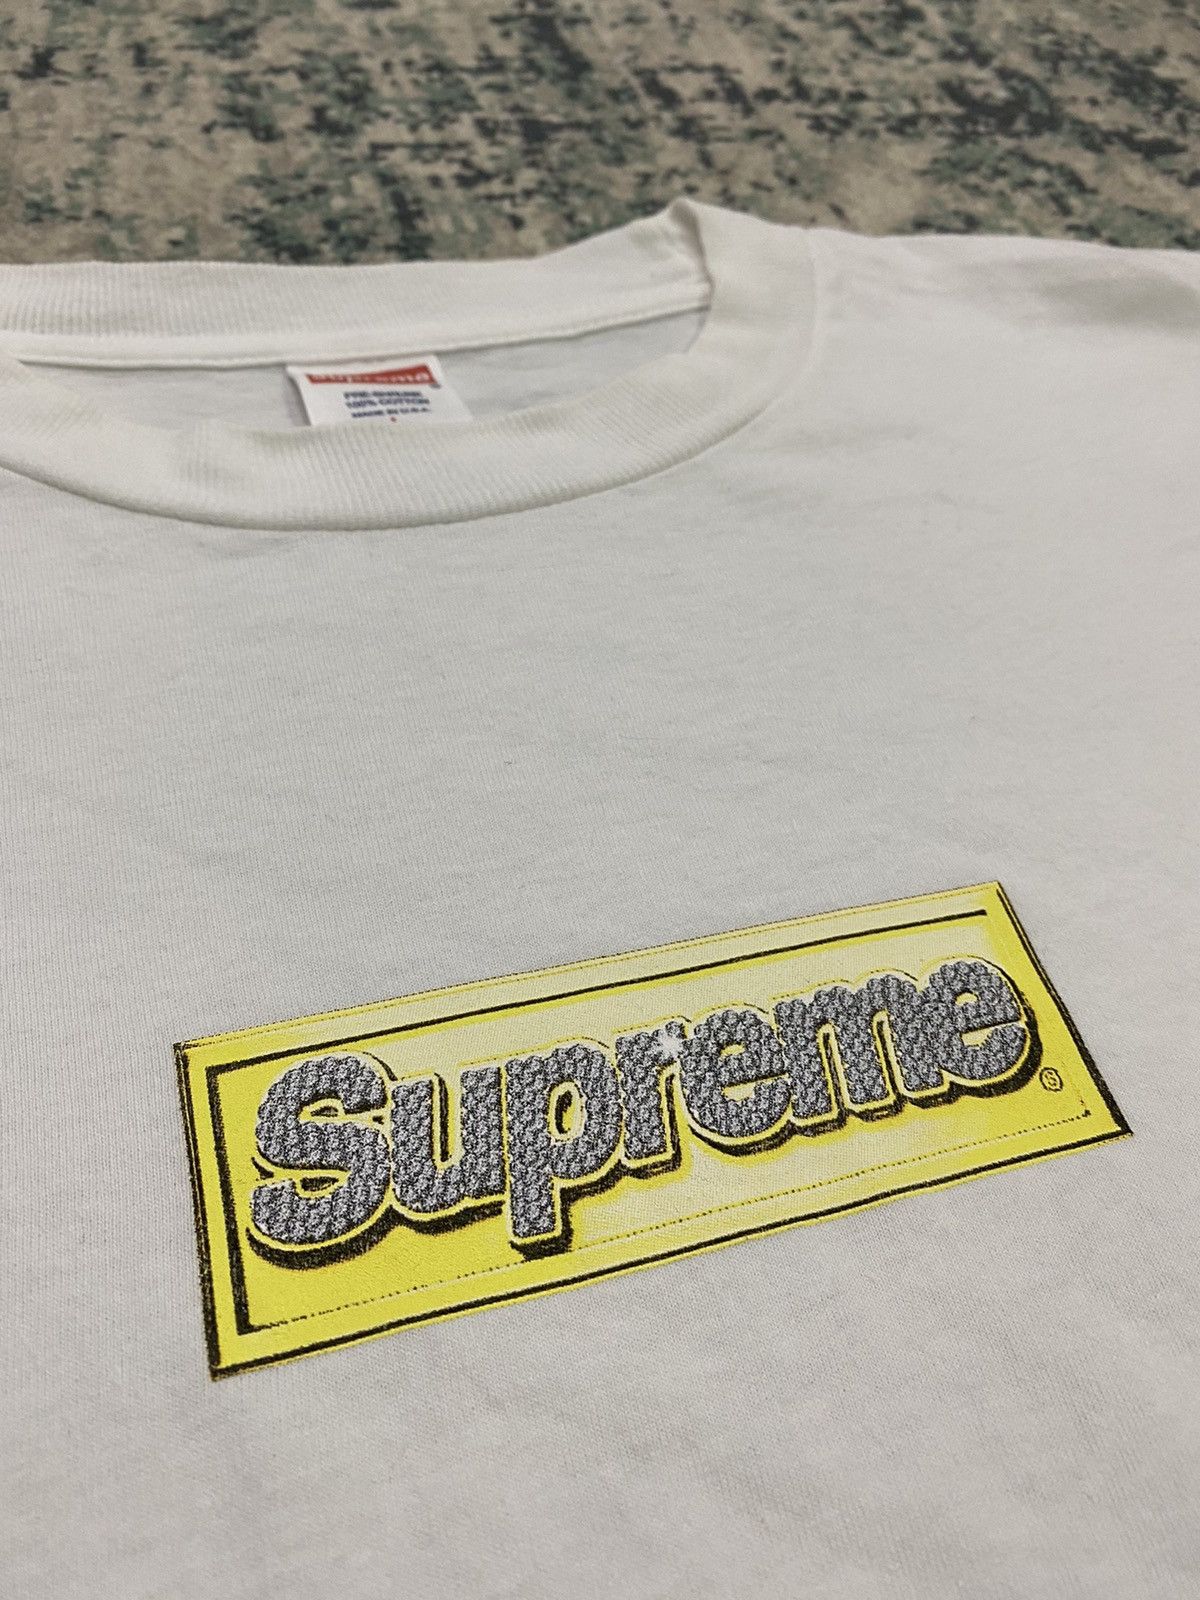 Supreme S/S13 Bling Box Logo T-Shirt OG - 11